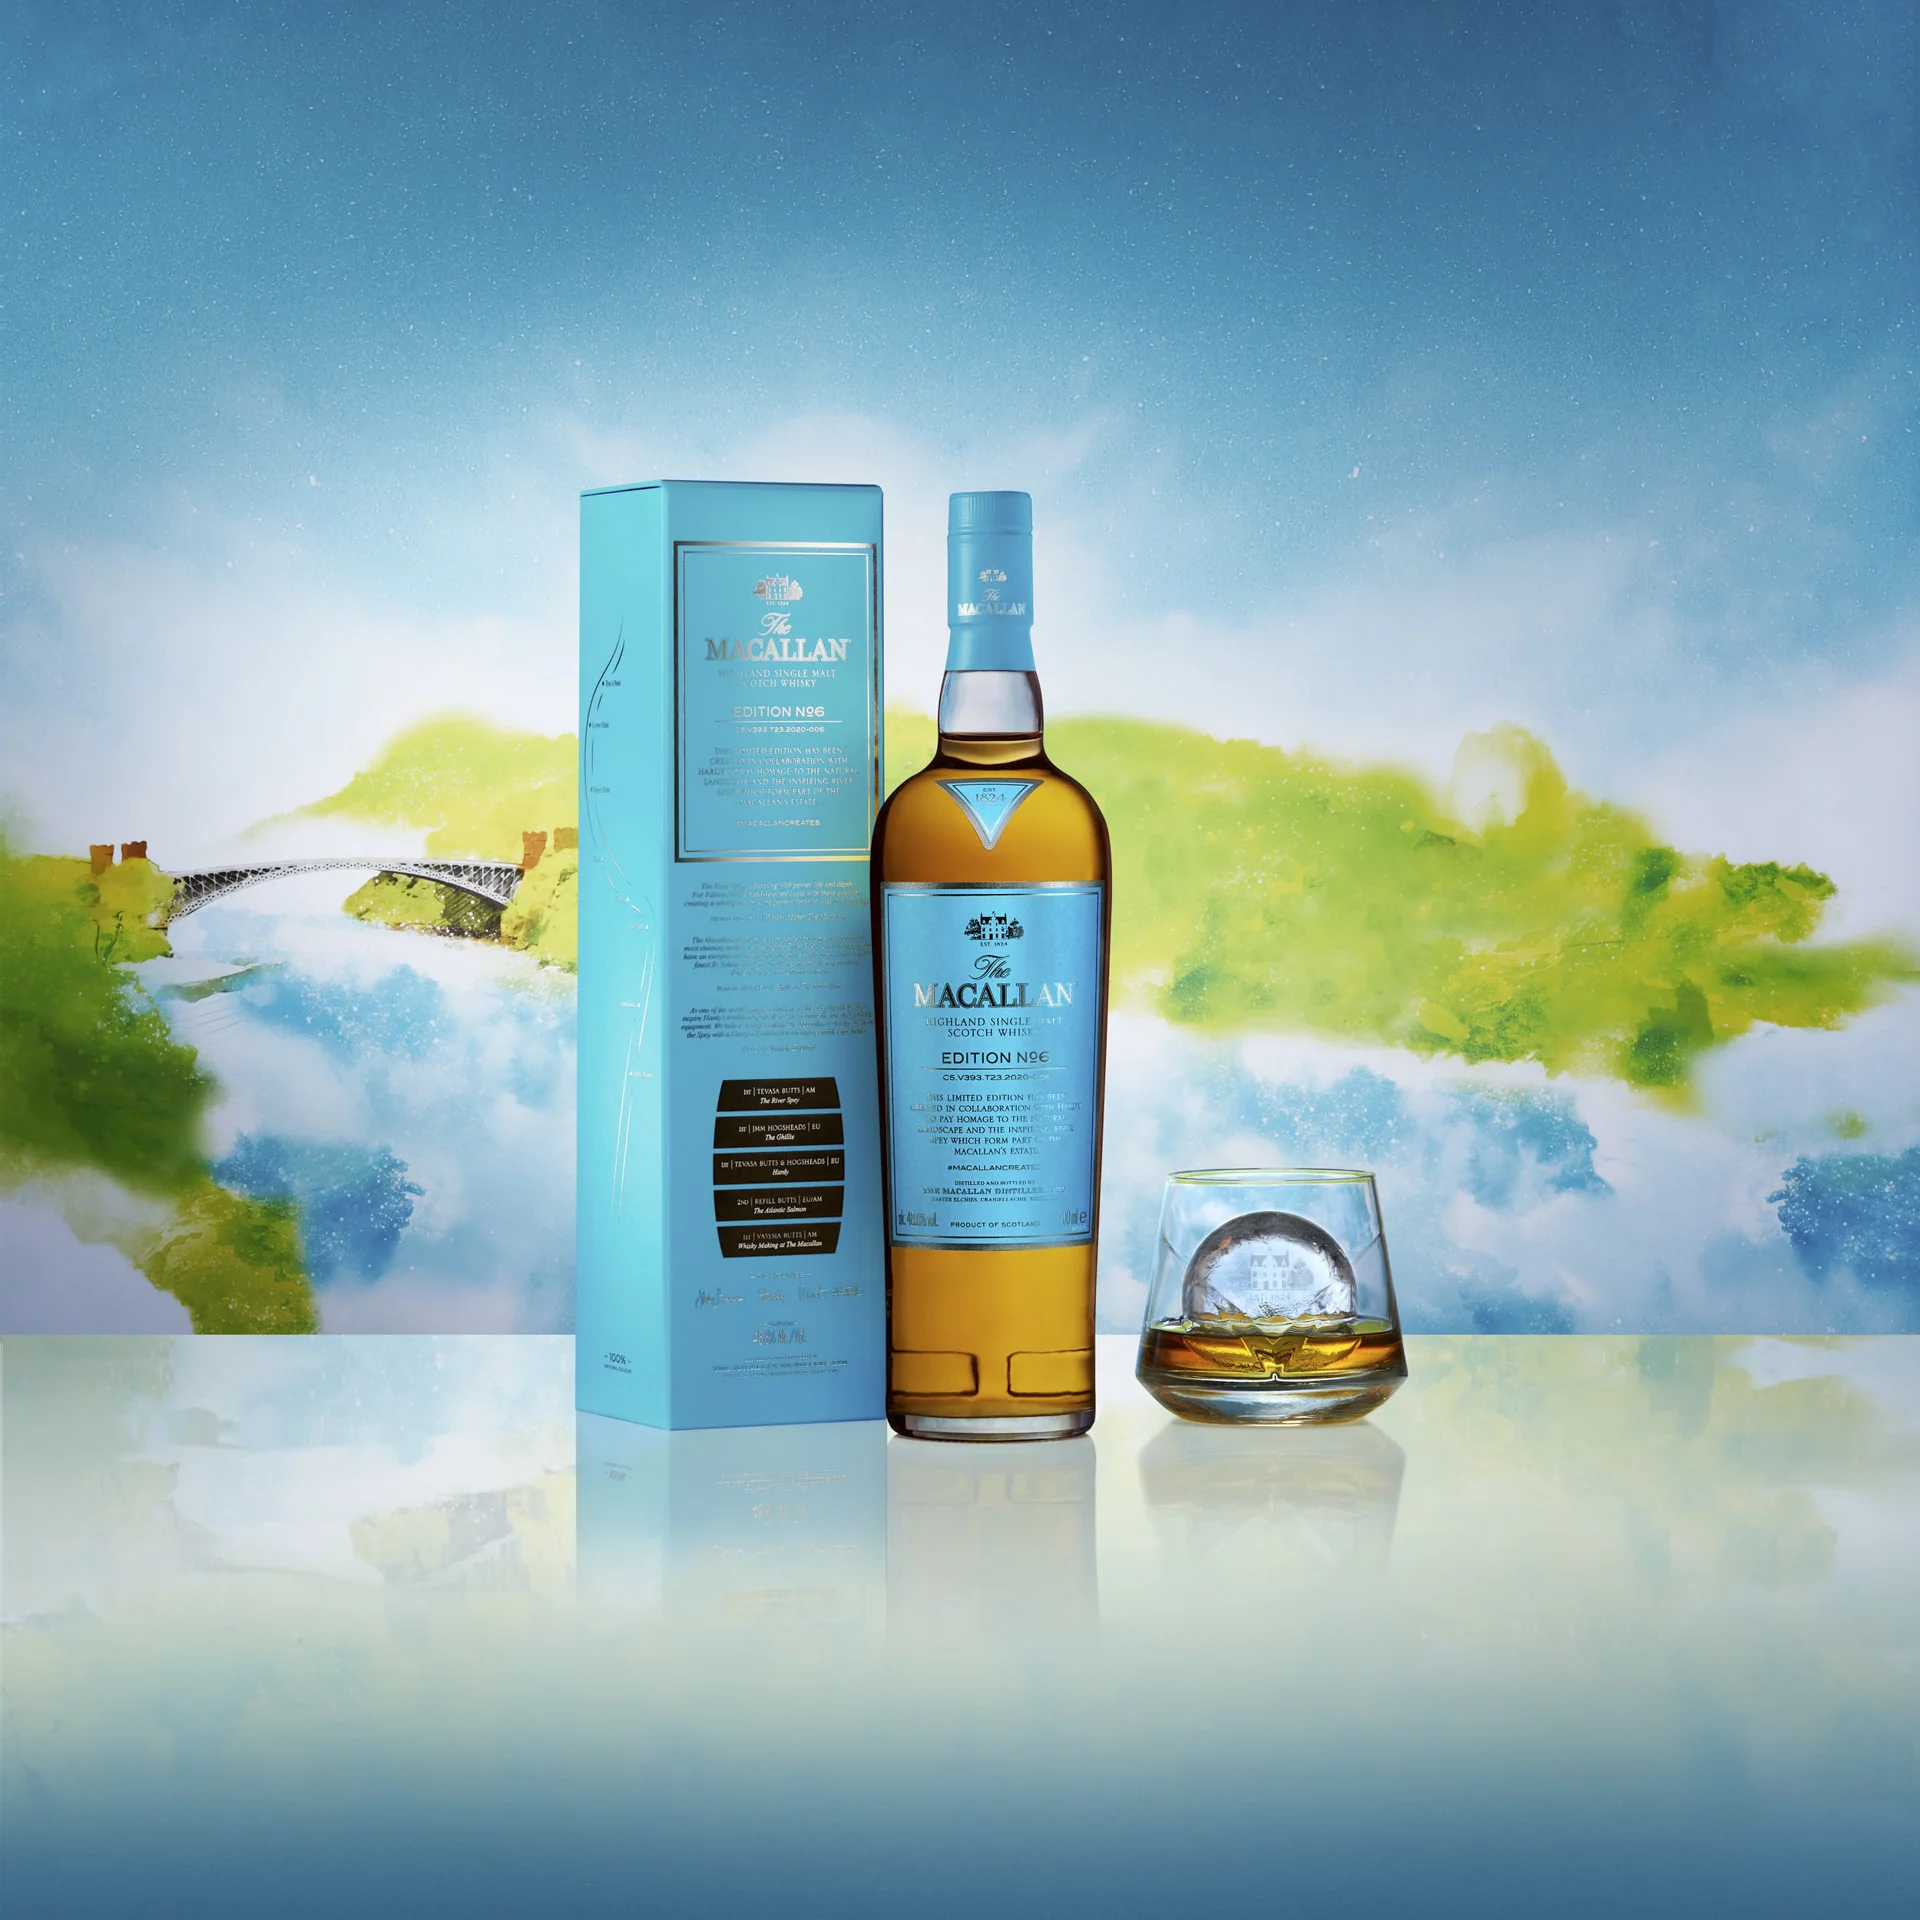 Fotografía de producto publicitaria para el lanzamiento del whisky The Macallan · Edition num. 6 a nivel mundial.